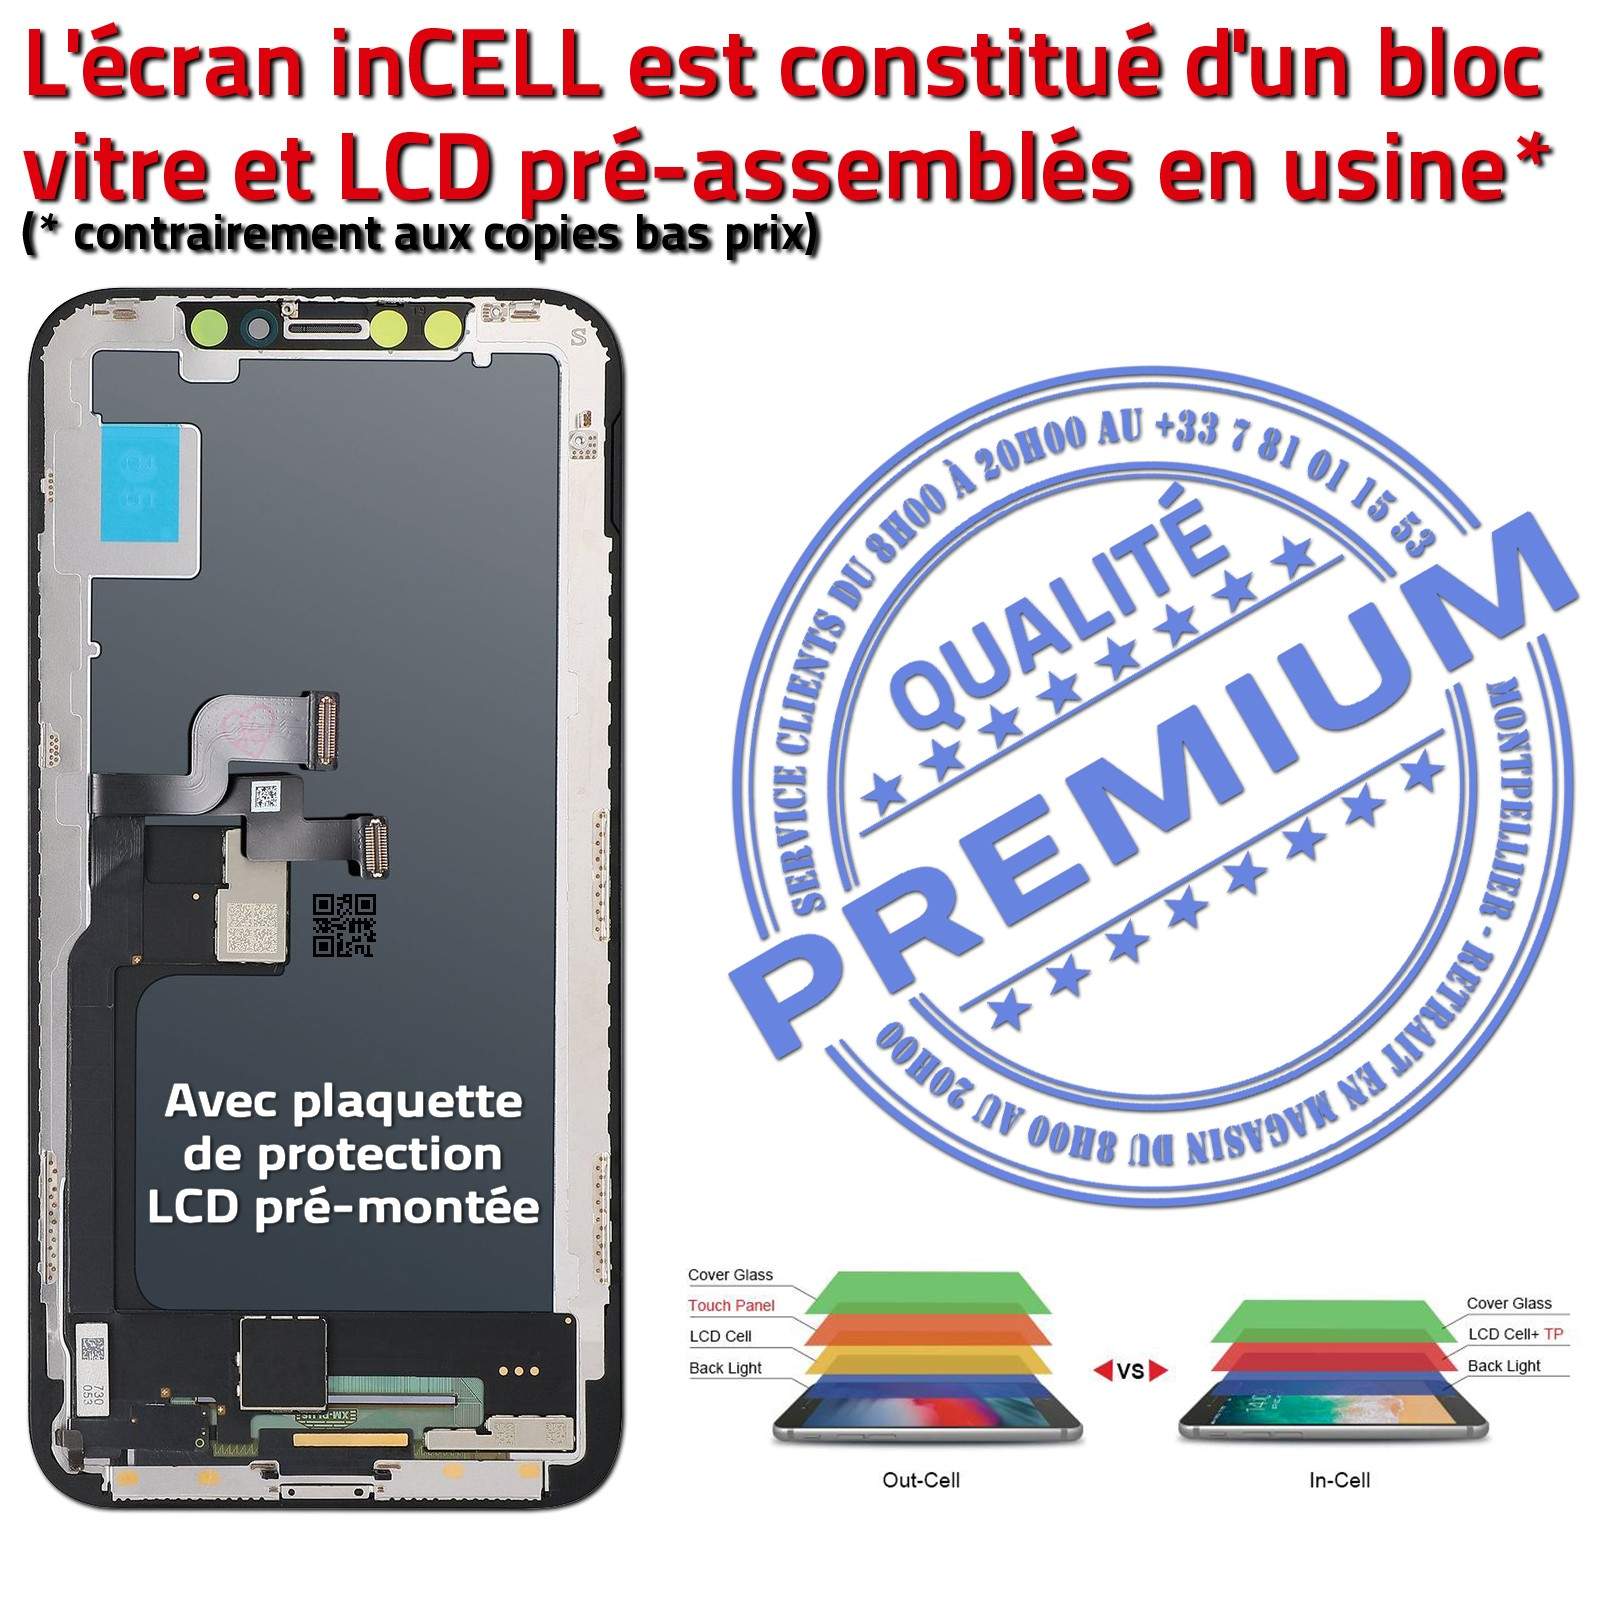 Écran Complet Verre Multi-Touch inCELL Apple iPhone 10 PREMIUM SmartPhone  3D Touch LCD Remplacement Cristaux Liquides Oléophobe